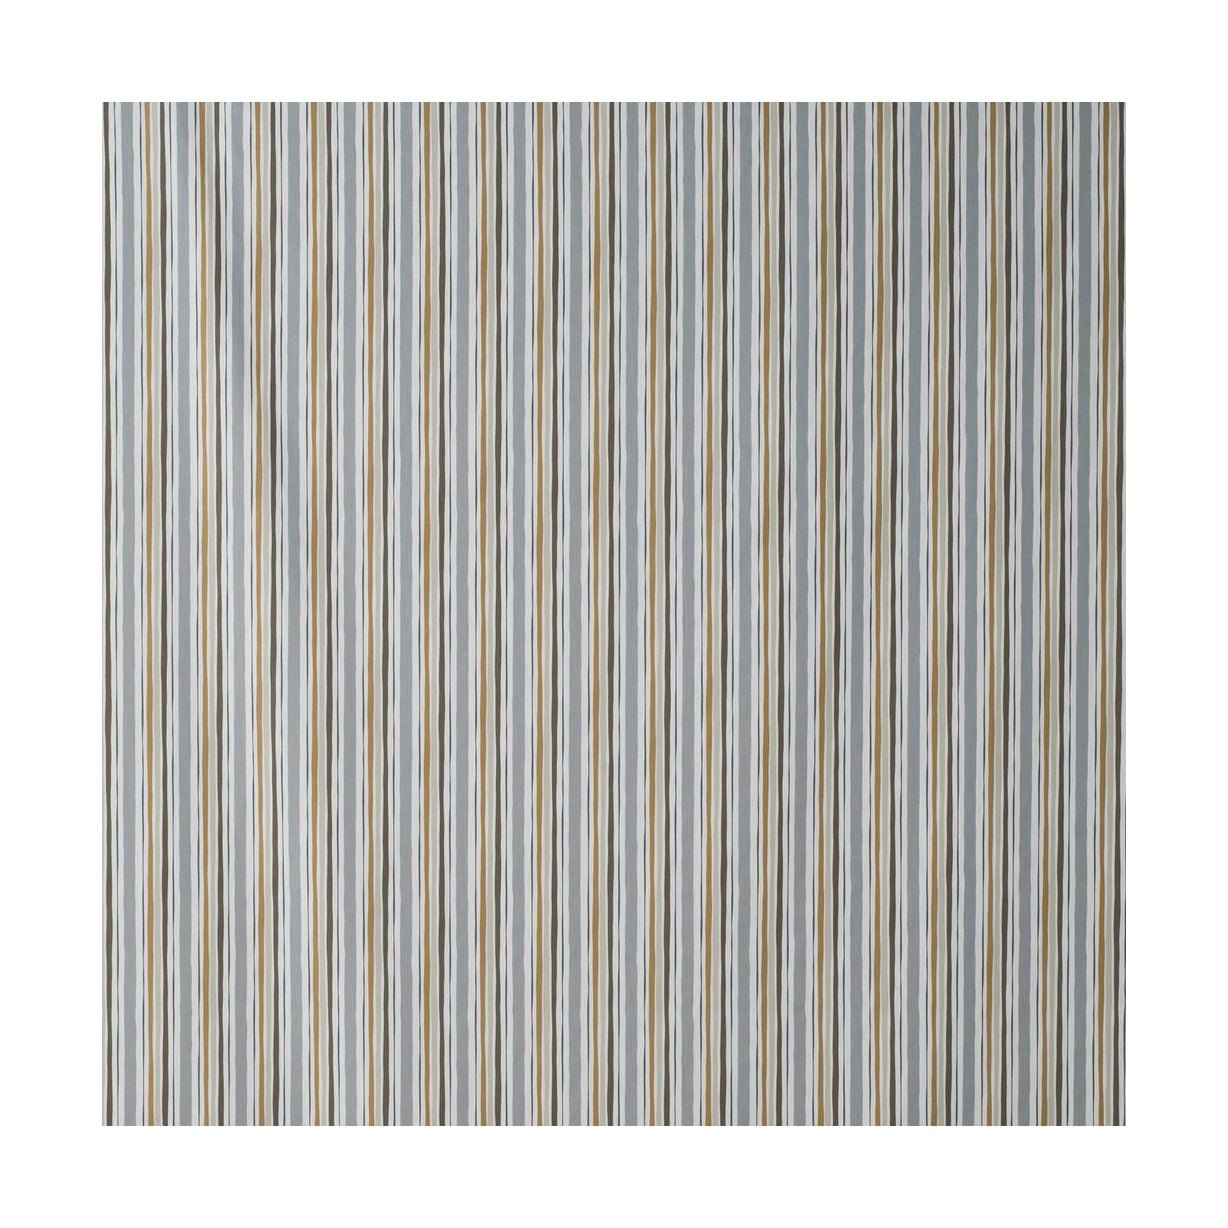 Spira Randi Fabric Width 150 Cm (Price Per Meter), Brown